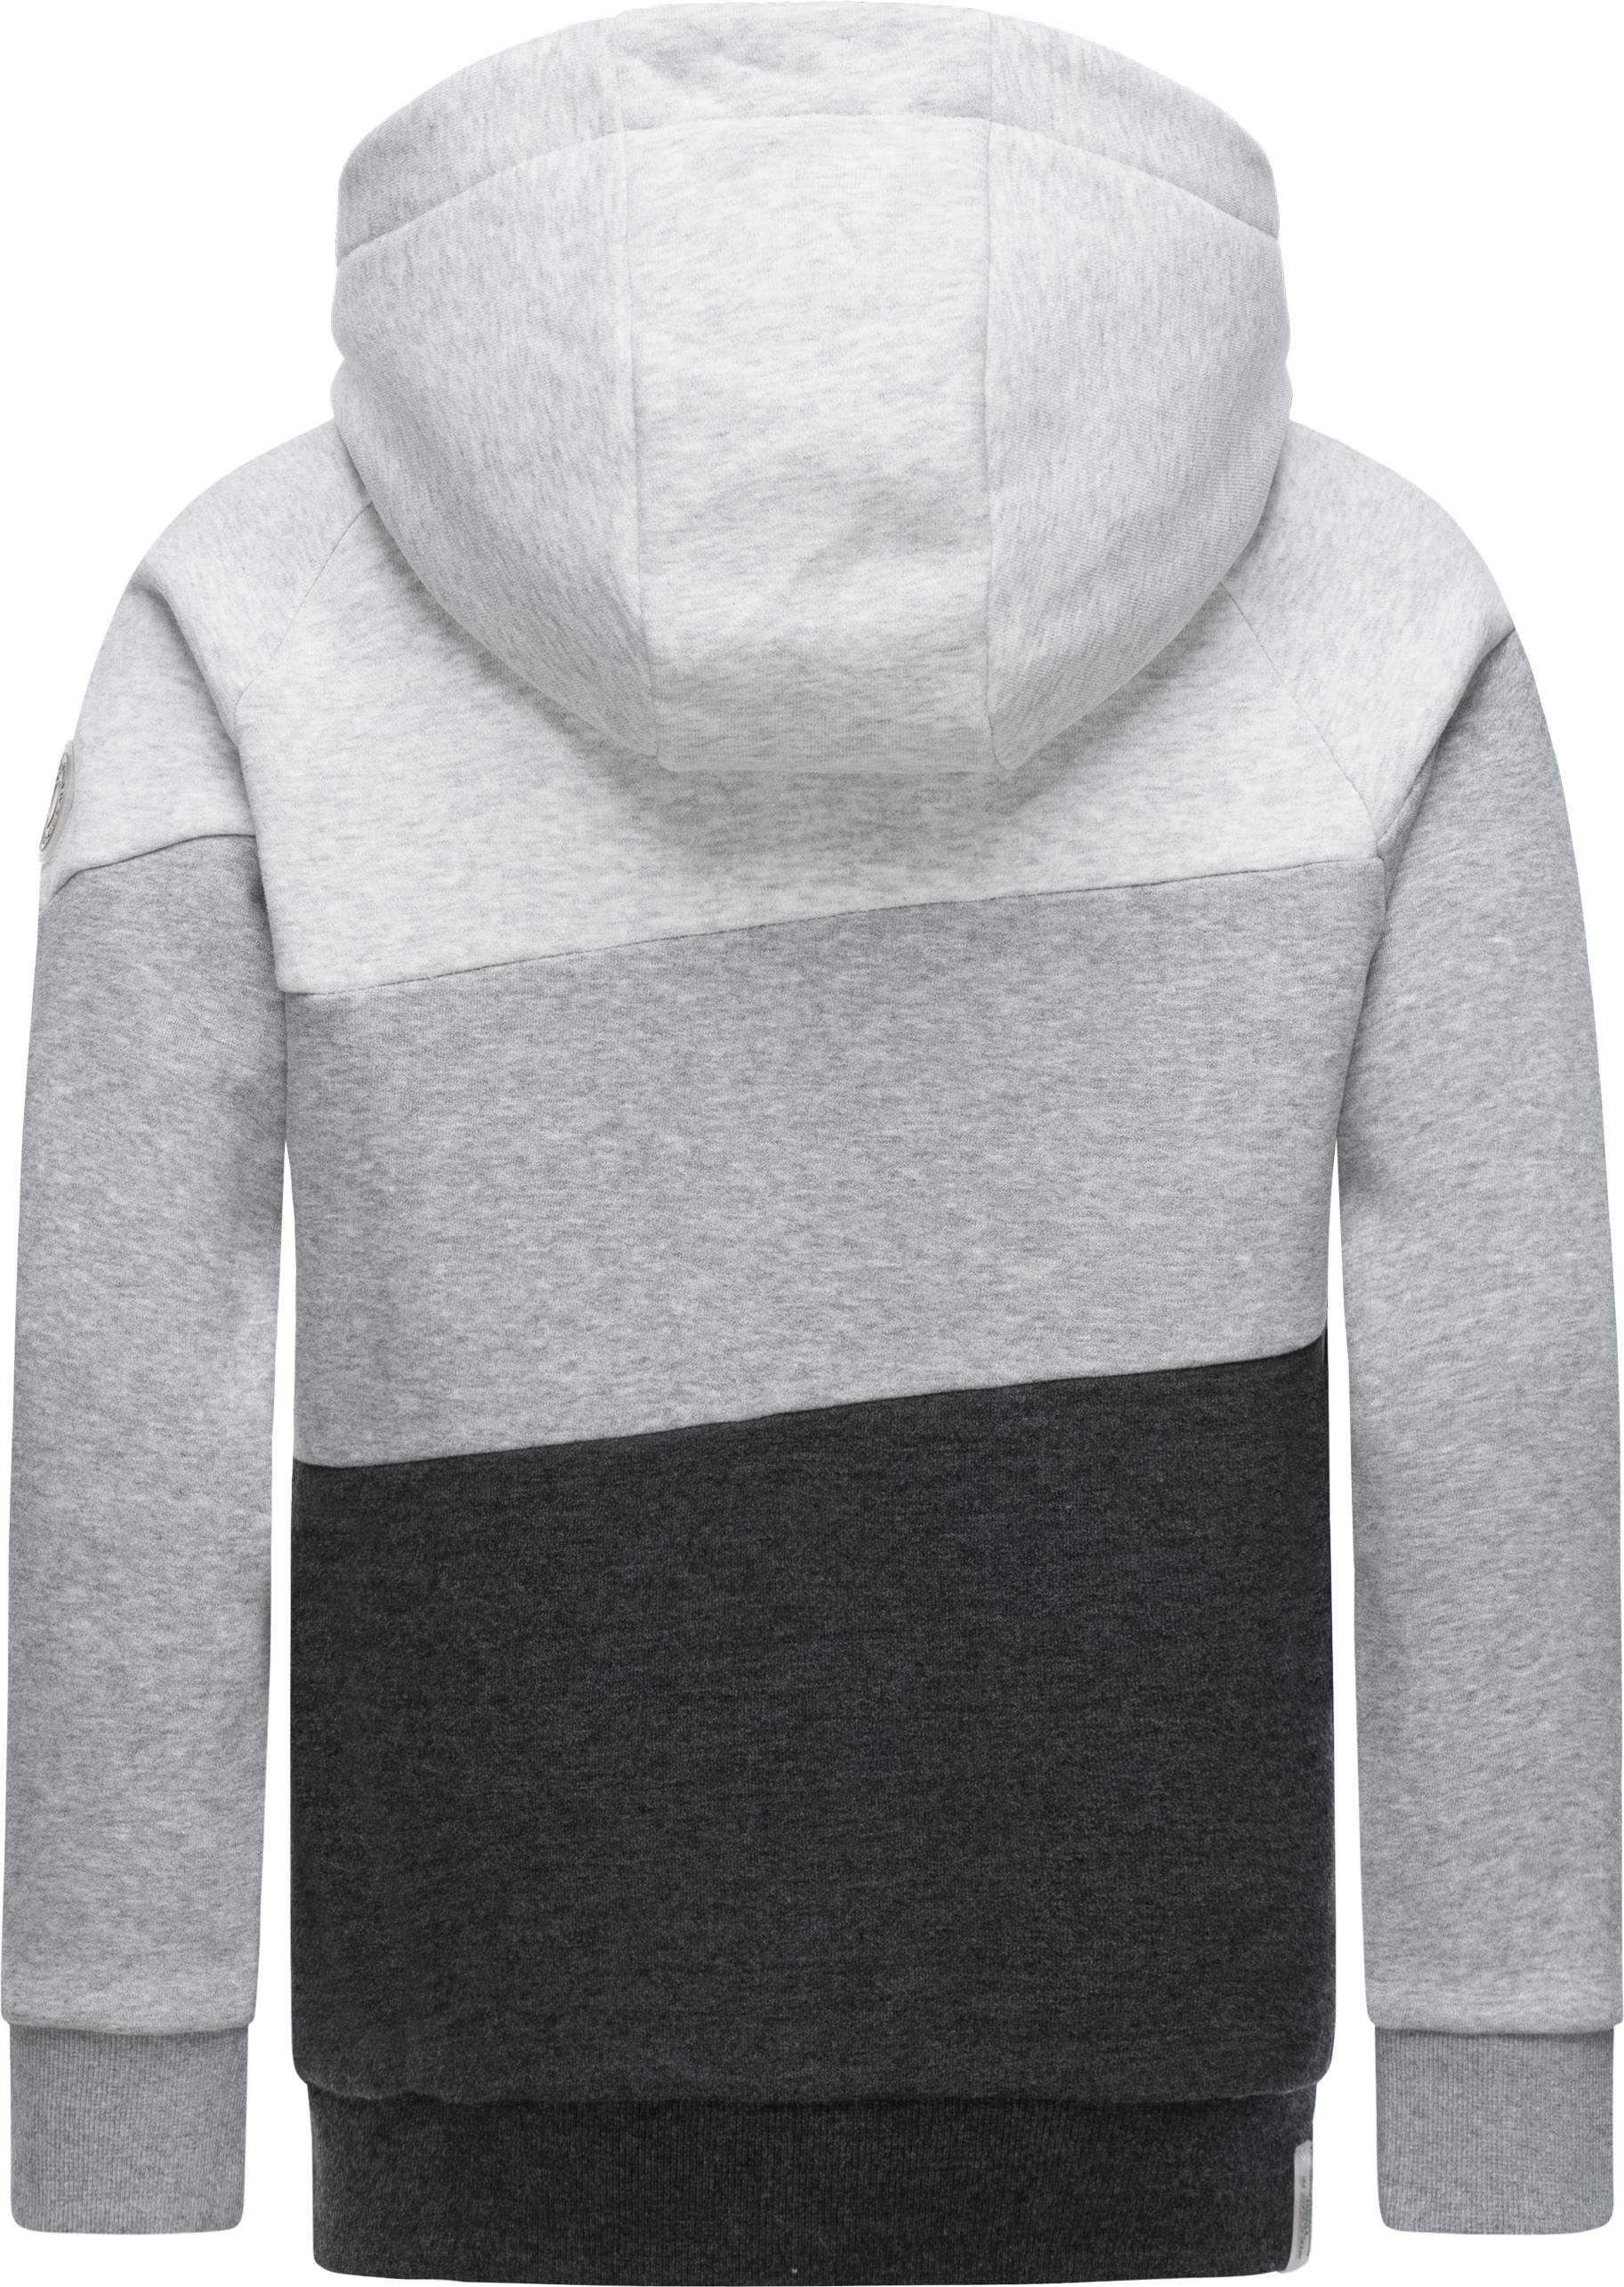 Kinder Kapuzensweater Vendio großer Ragwear mit grau Kapuze Kapuzenpullover Jungen